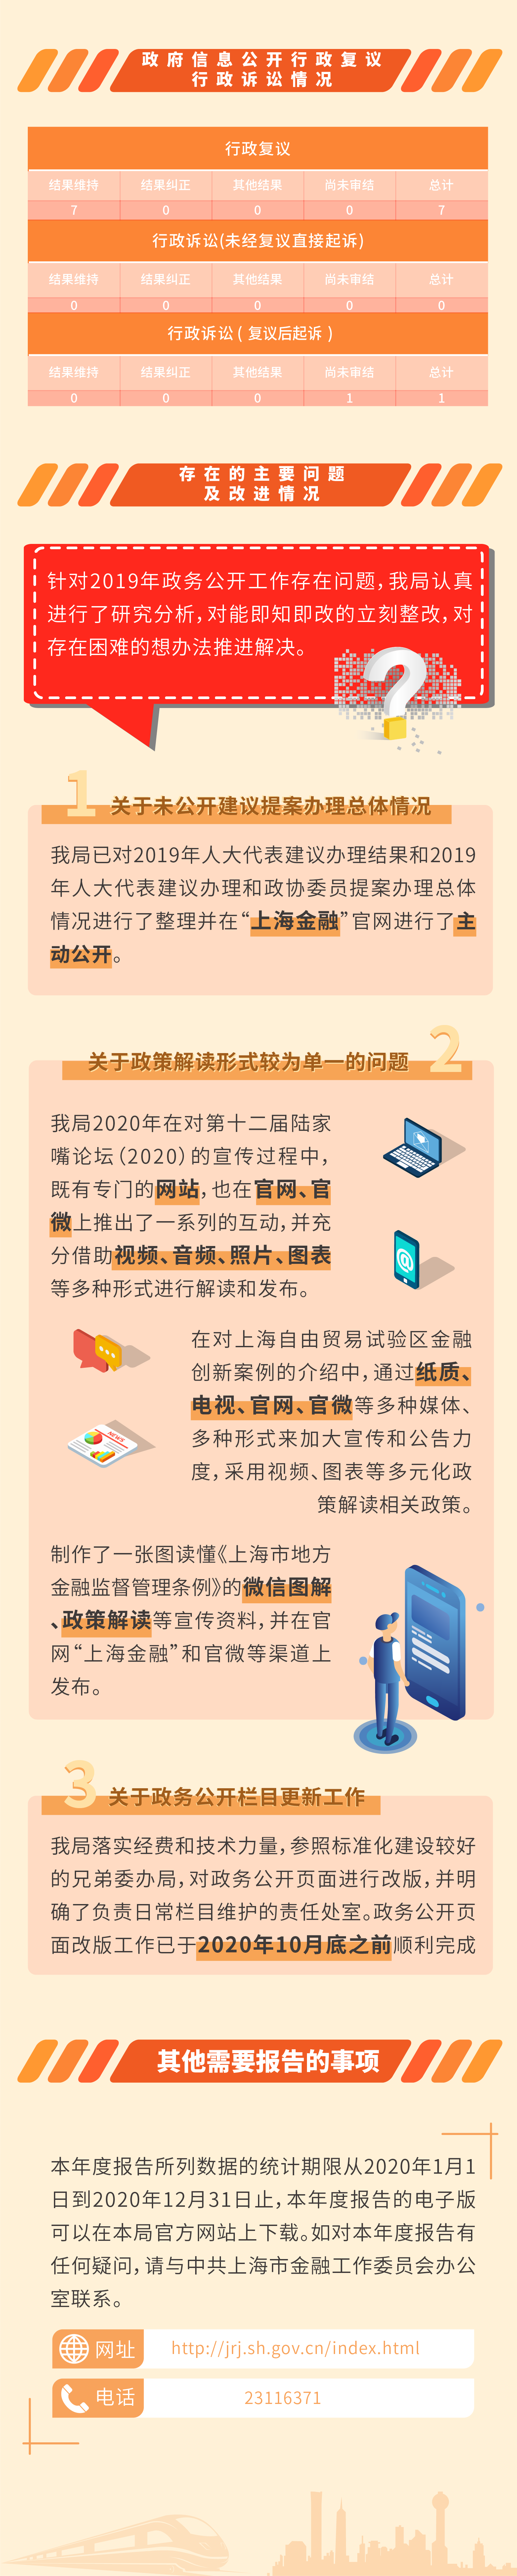 2020上海市地方金融监督管理局政府信息公开年度报告图文解读-4.png